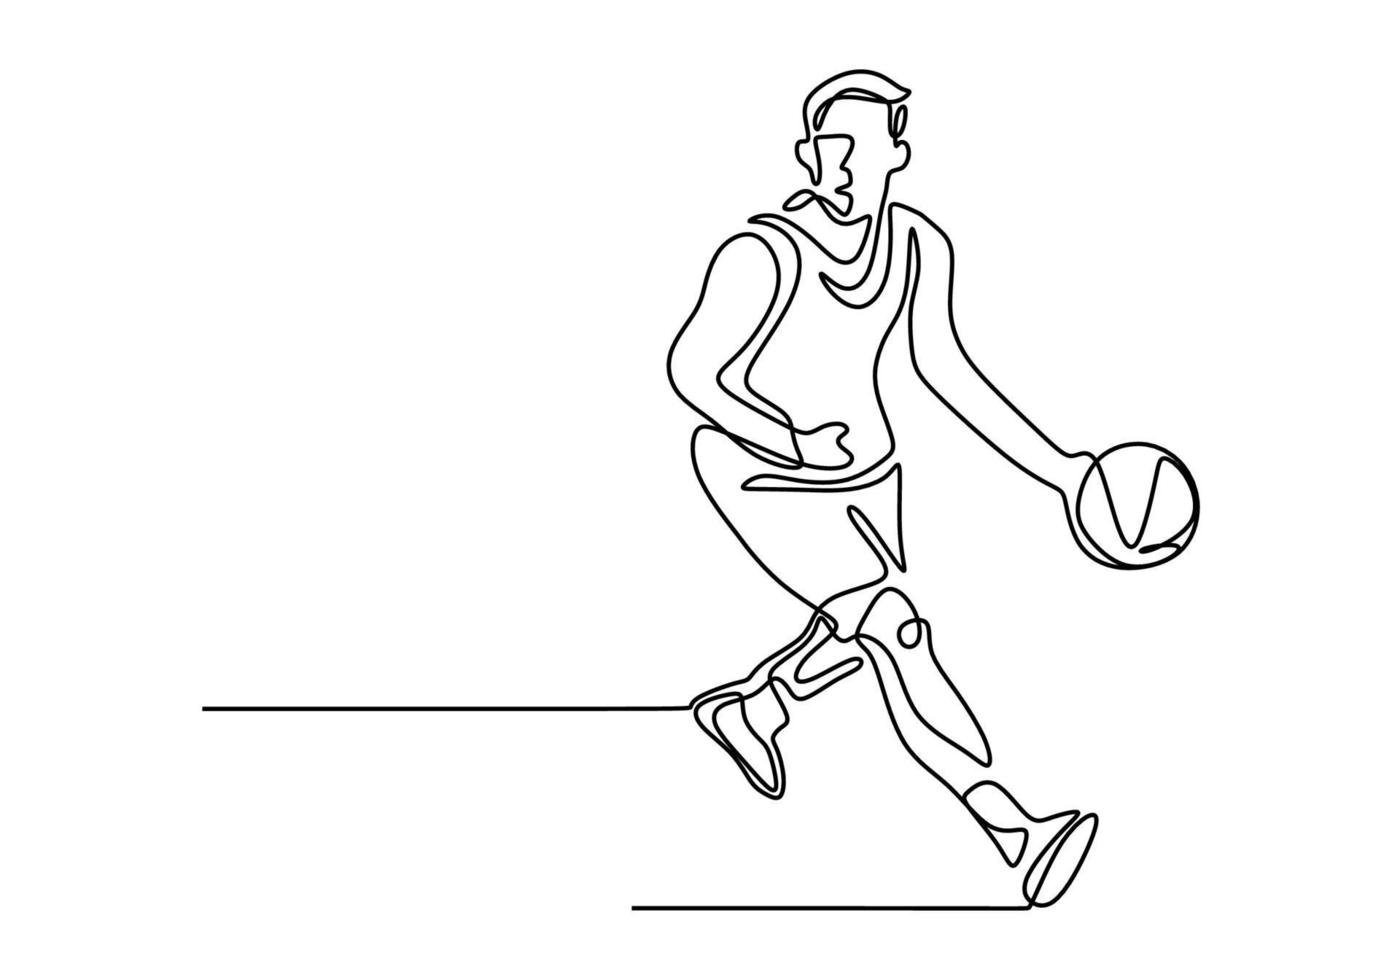 basquete contínuo uma ilustração vetorial de desenho de linha. vetor